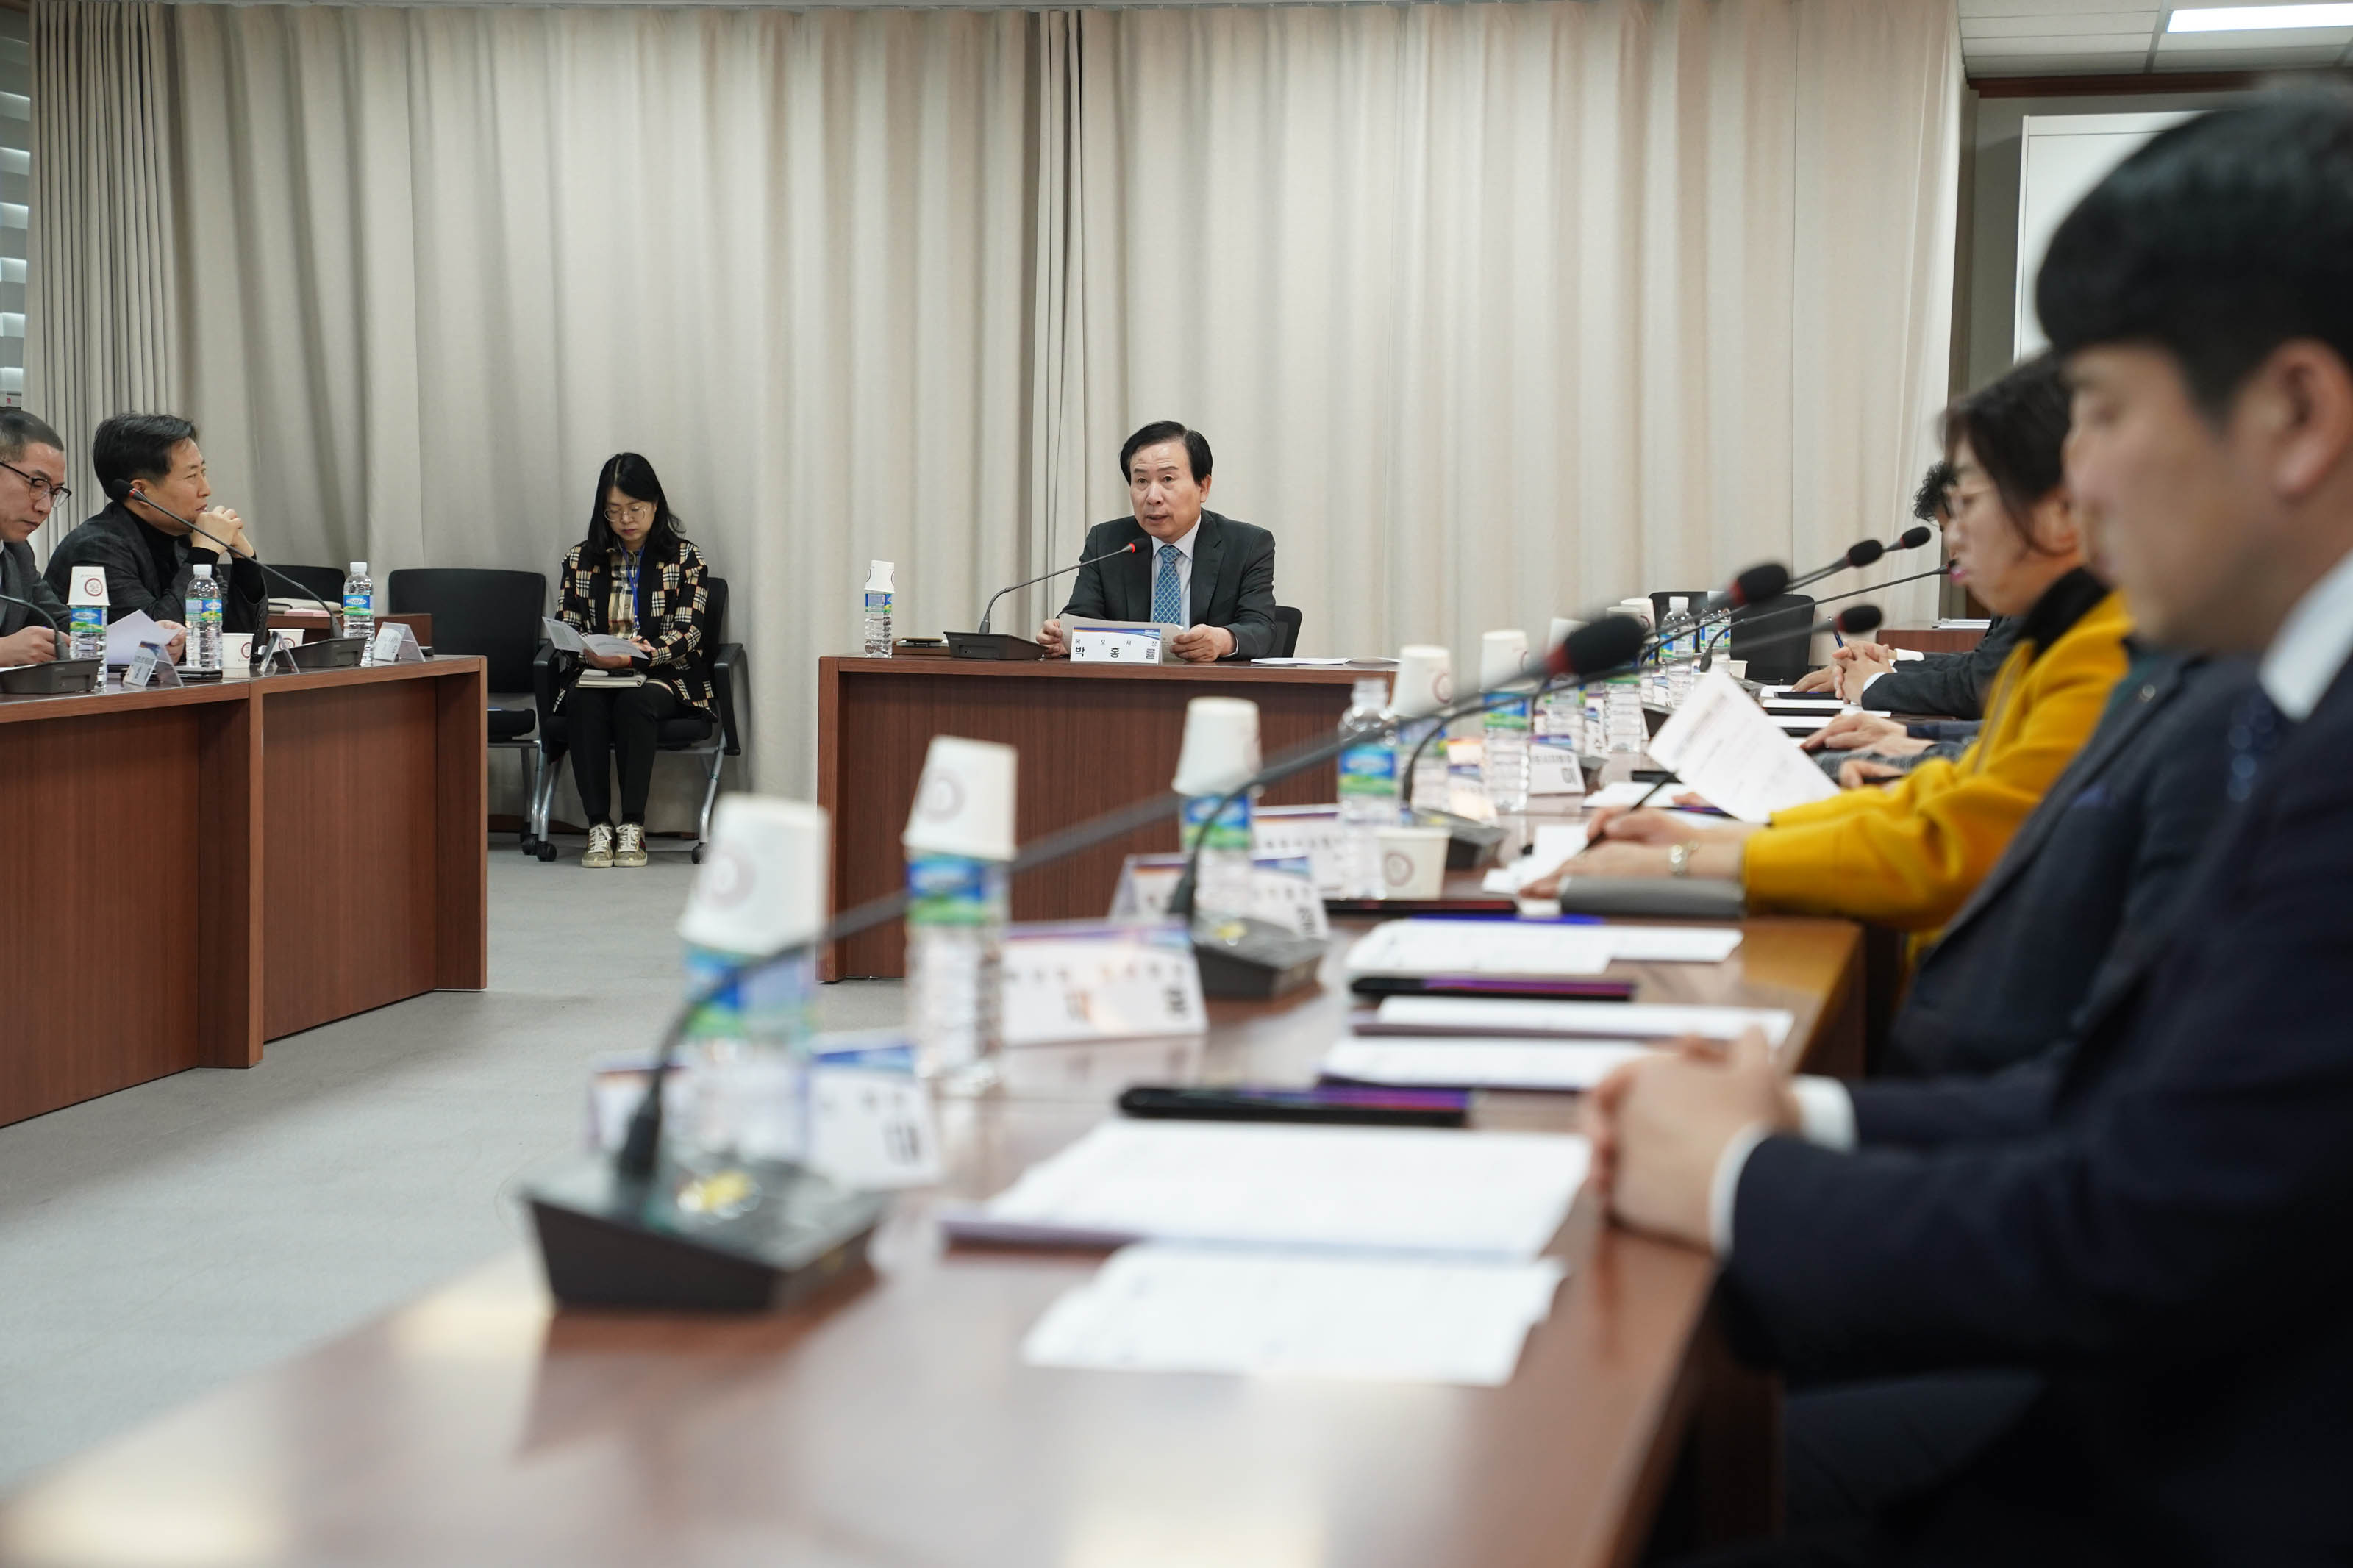 두 줄로 놓인 회의 테이블 가운데 박홍률 시장 1인 테이블이 있고 위원들을 바라보며 얘기를 하고 있다. 